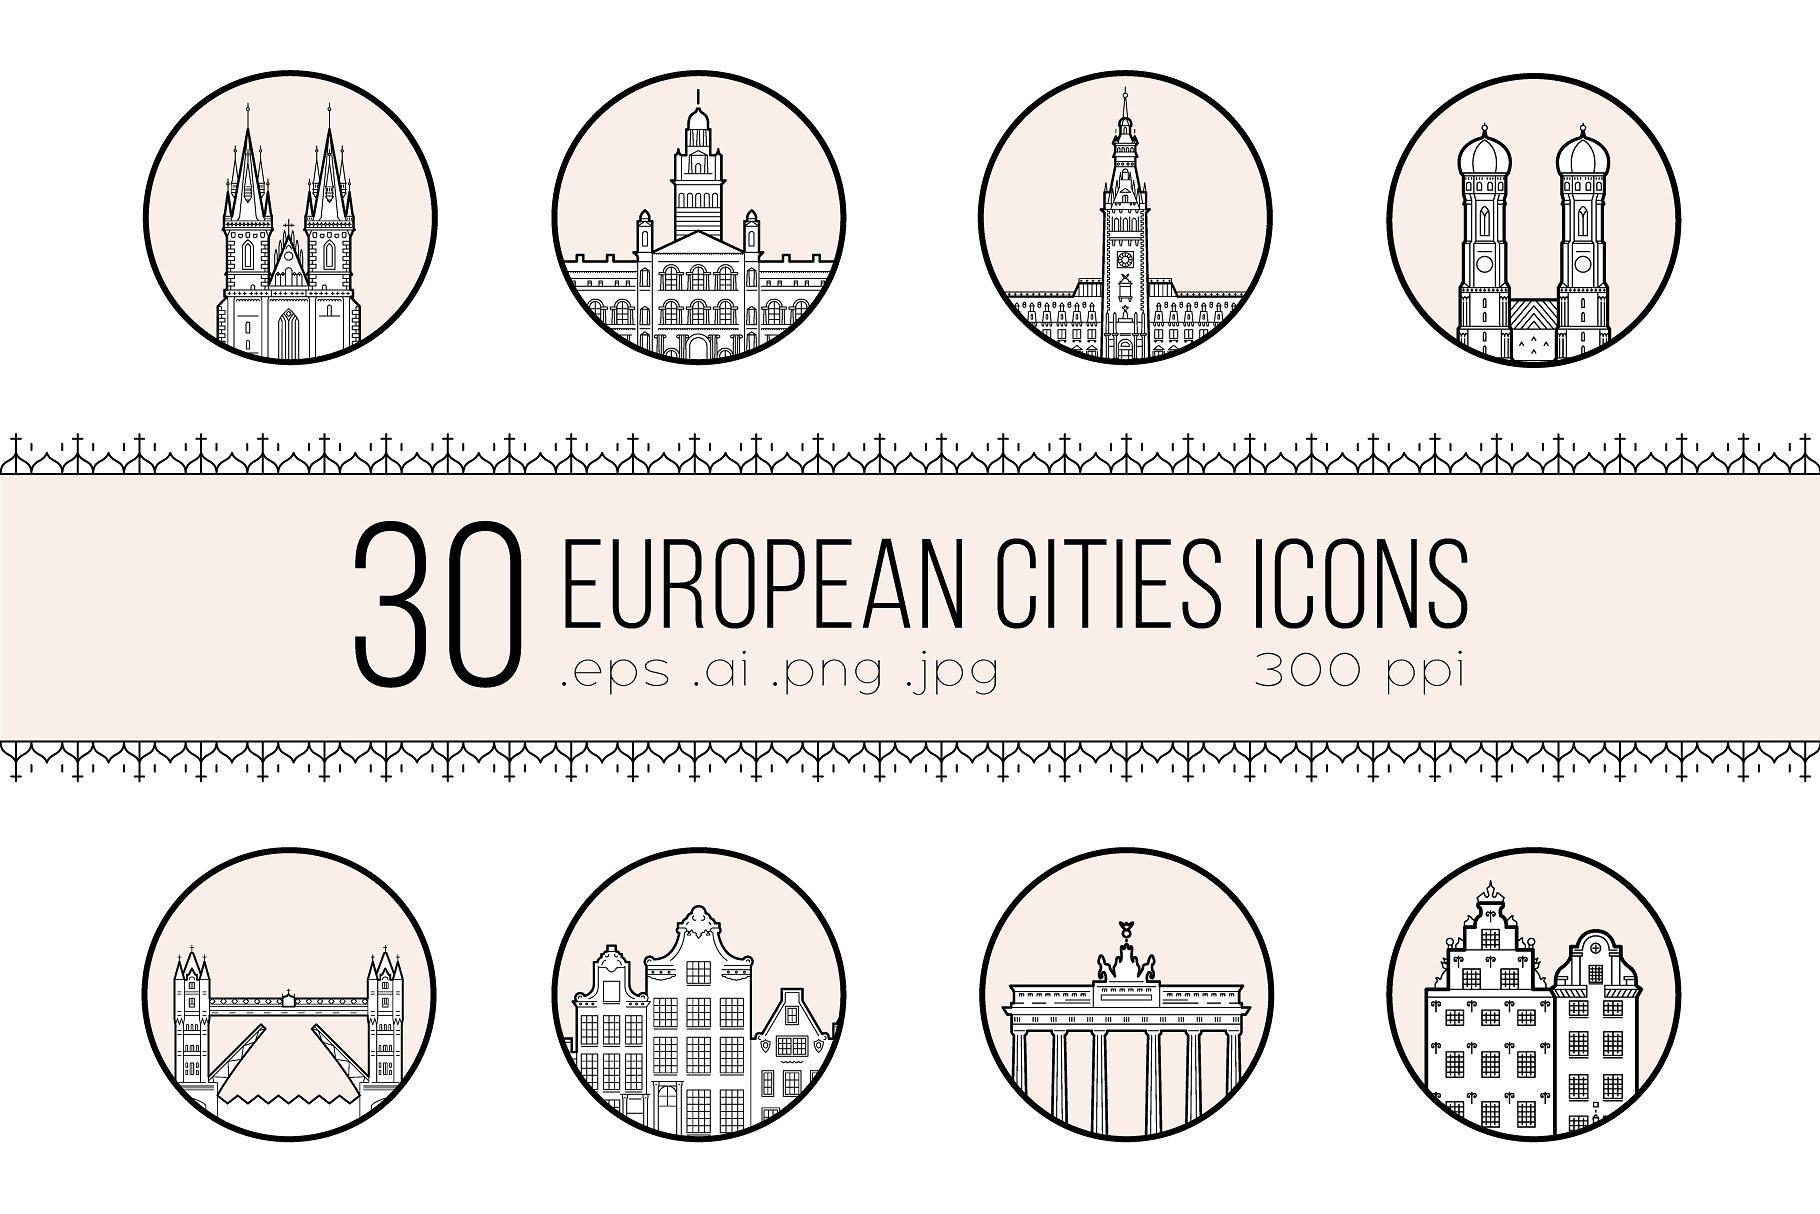 30个欧洲城市的徽章图标集合 Icons of 30 European cities插图